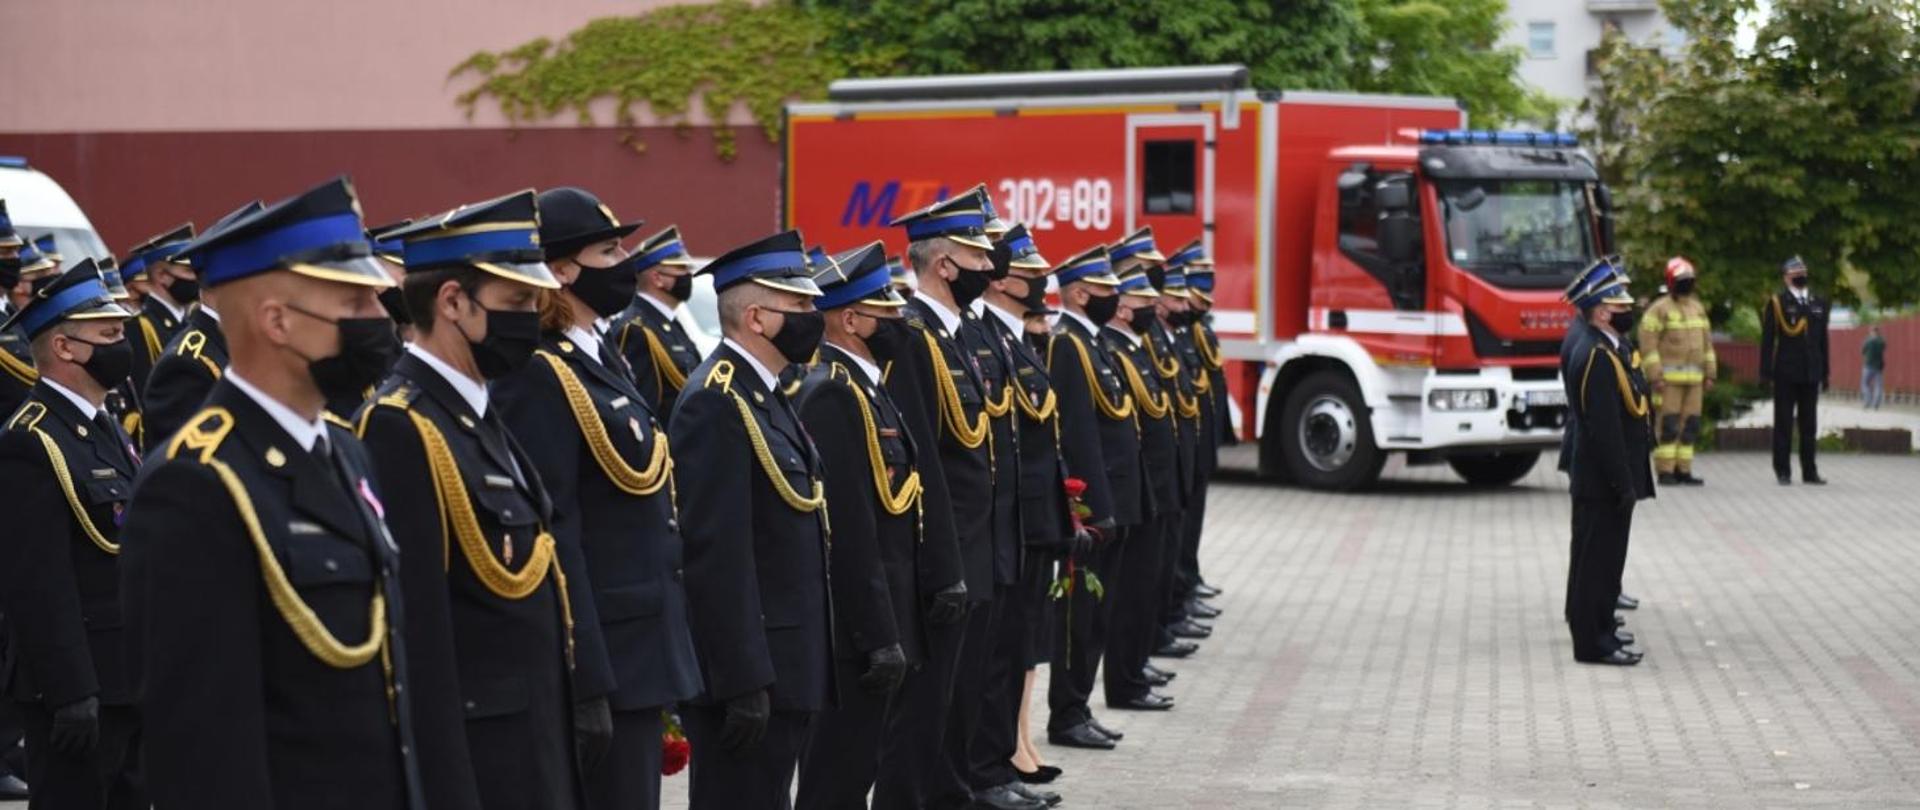 Zdjęcie przedstawia funkcjonariuszy Państwowej Straży Pożarnej ustawionych w szeregach w umundurowaniu galowym oraz czarnych maseczkach. W tle pojazdy pożarnicze. 